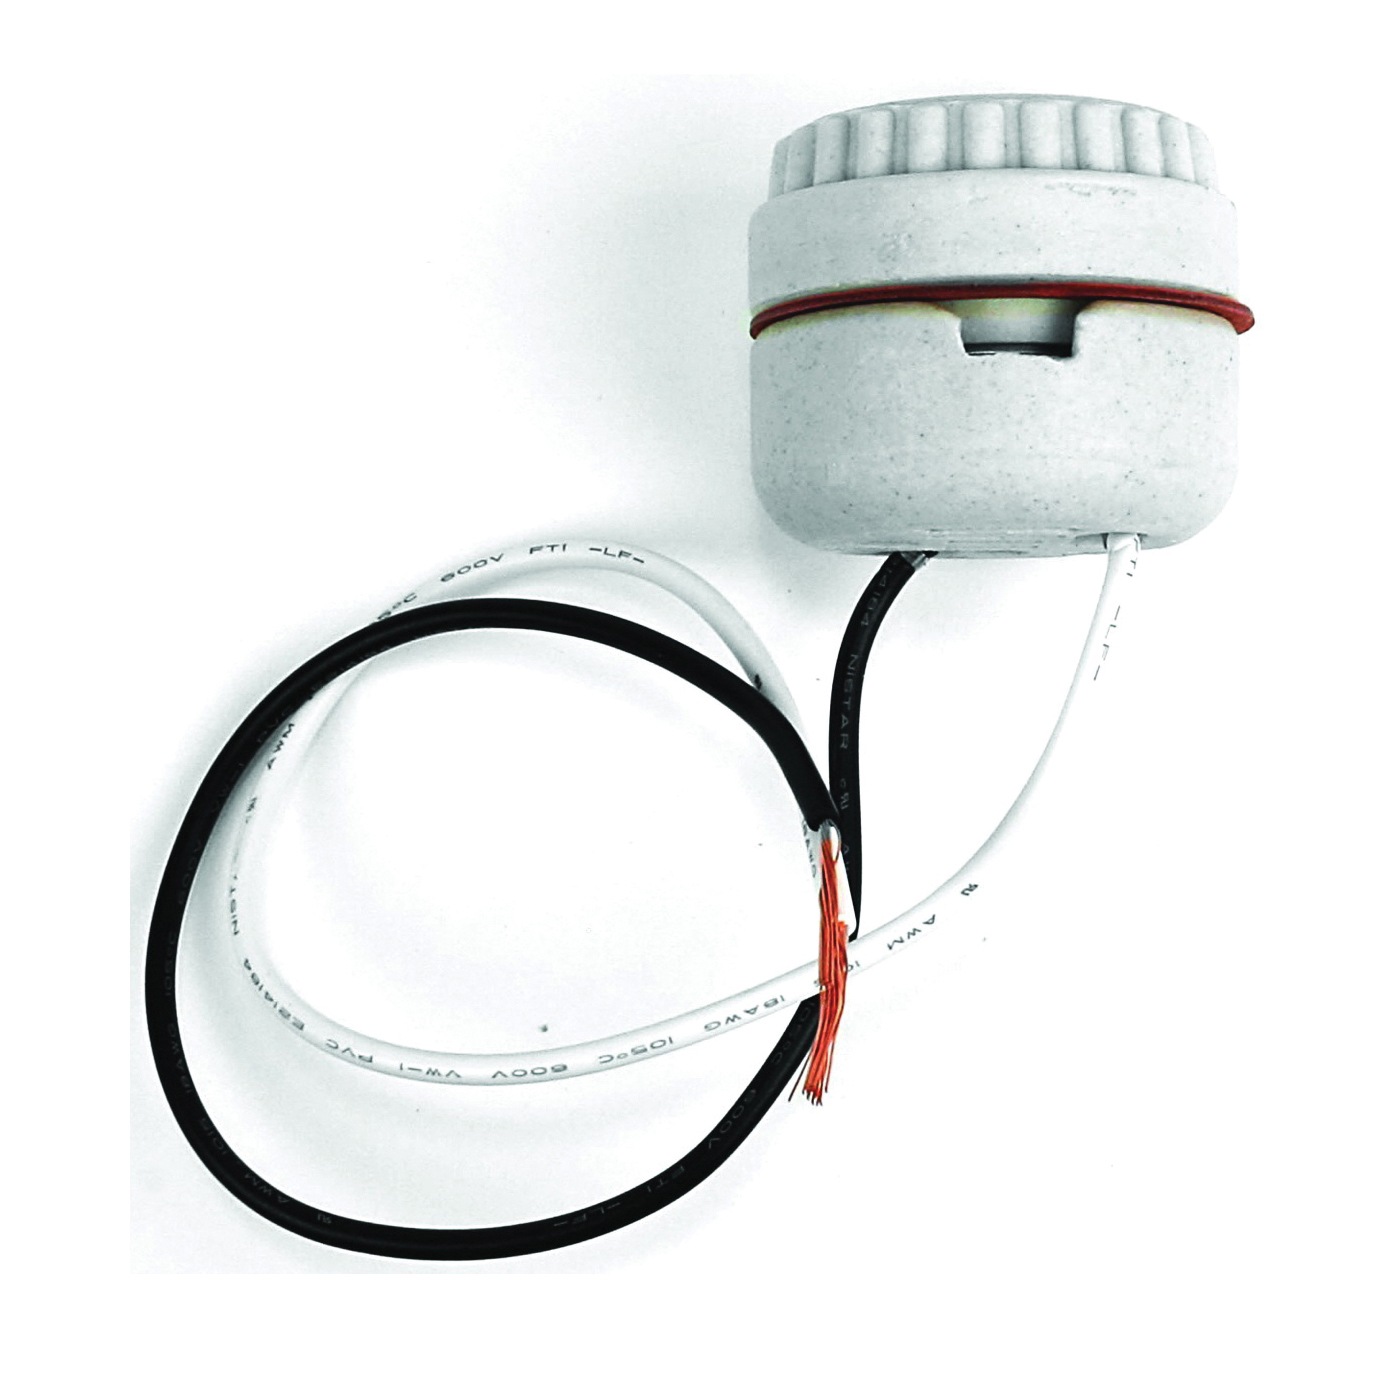 60577 Lamp Socket, 250 V, 660 W, Porcelain Housing Material, White